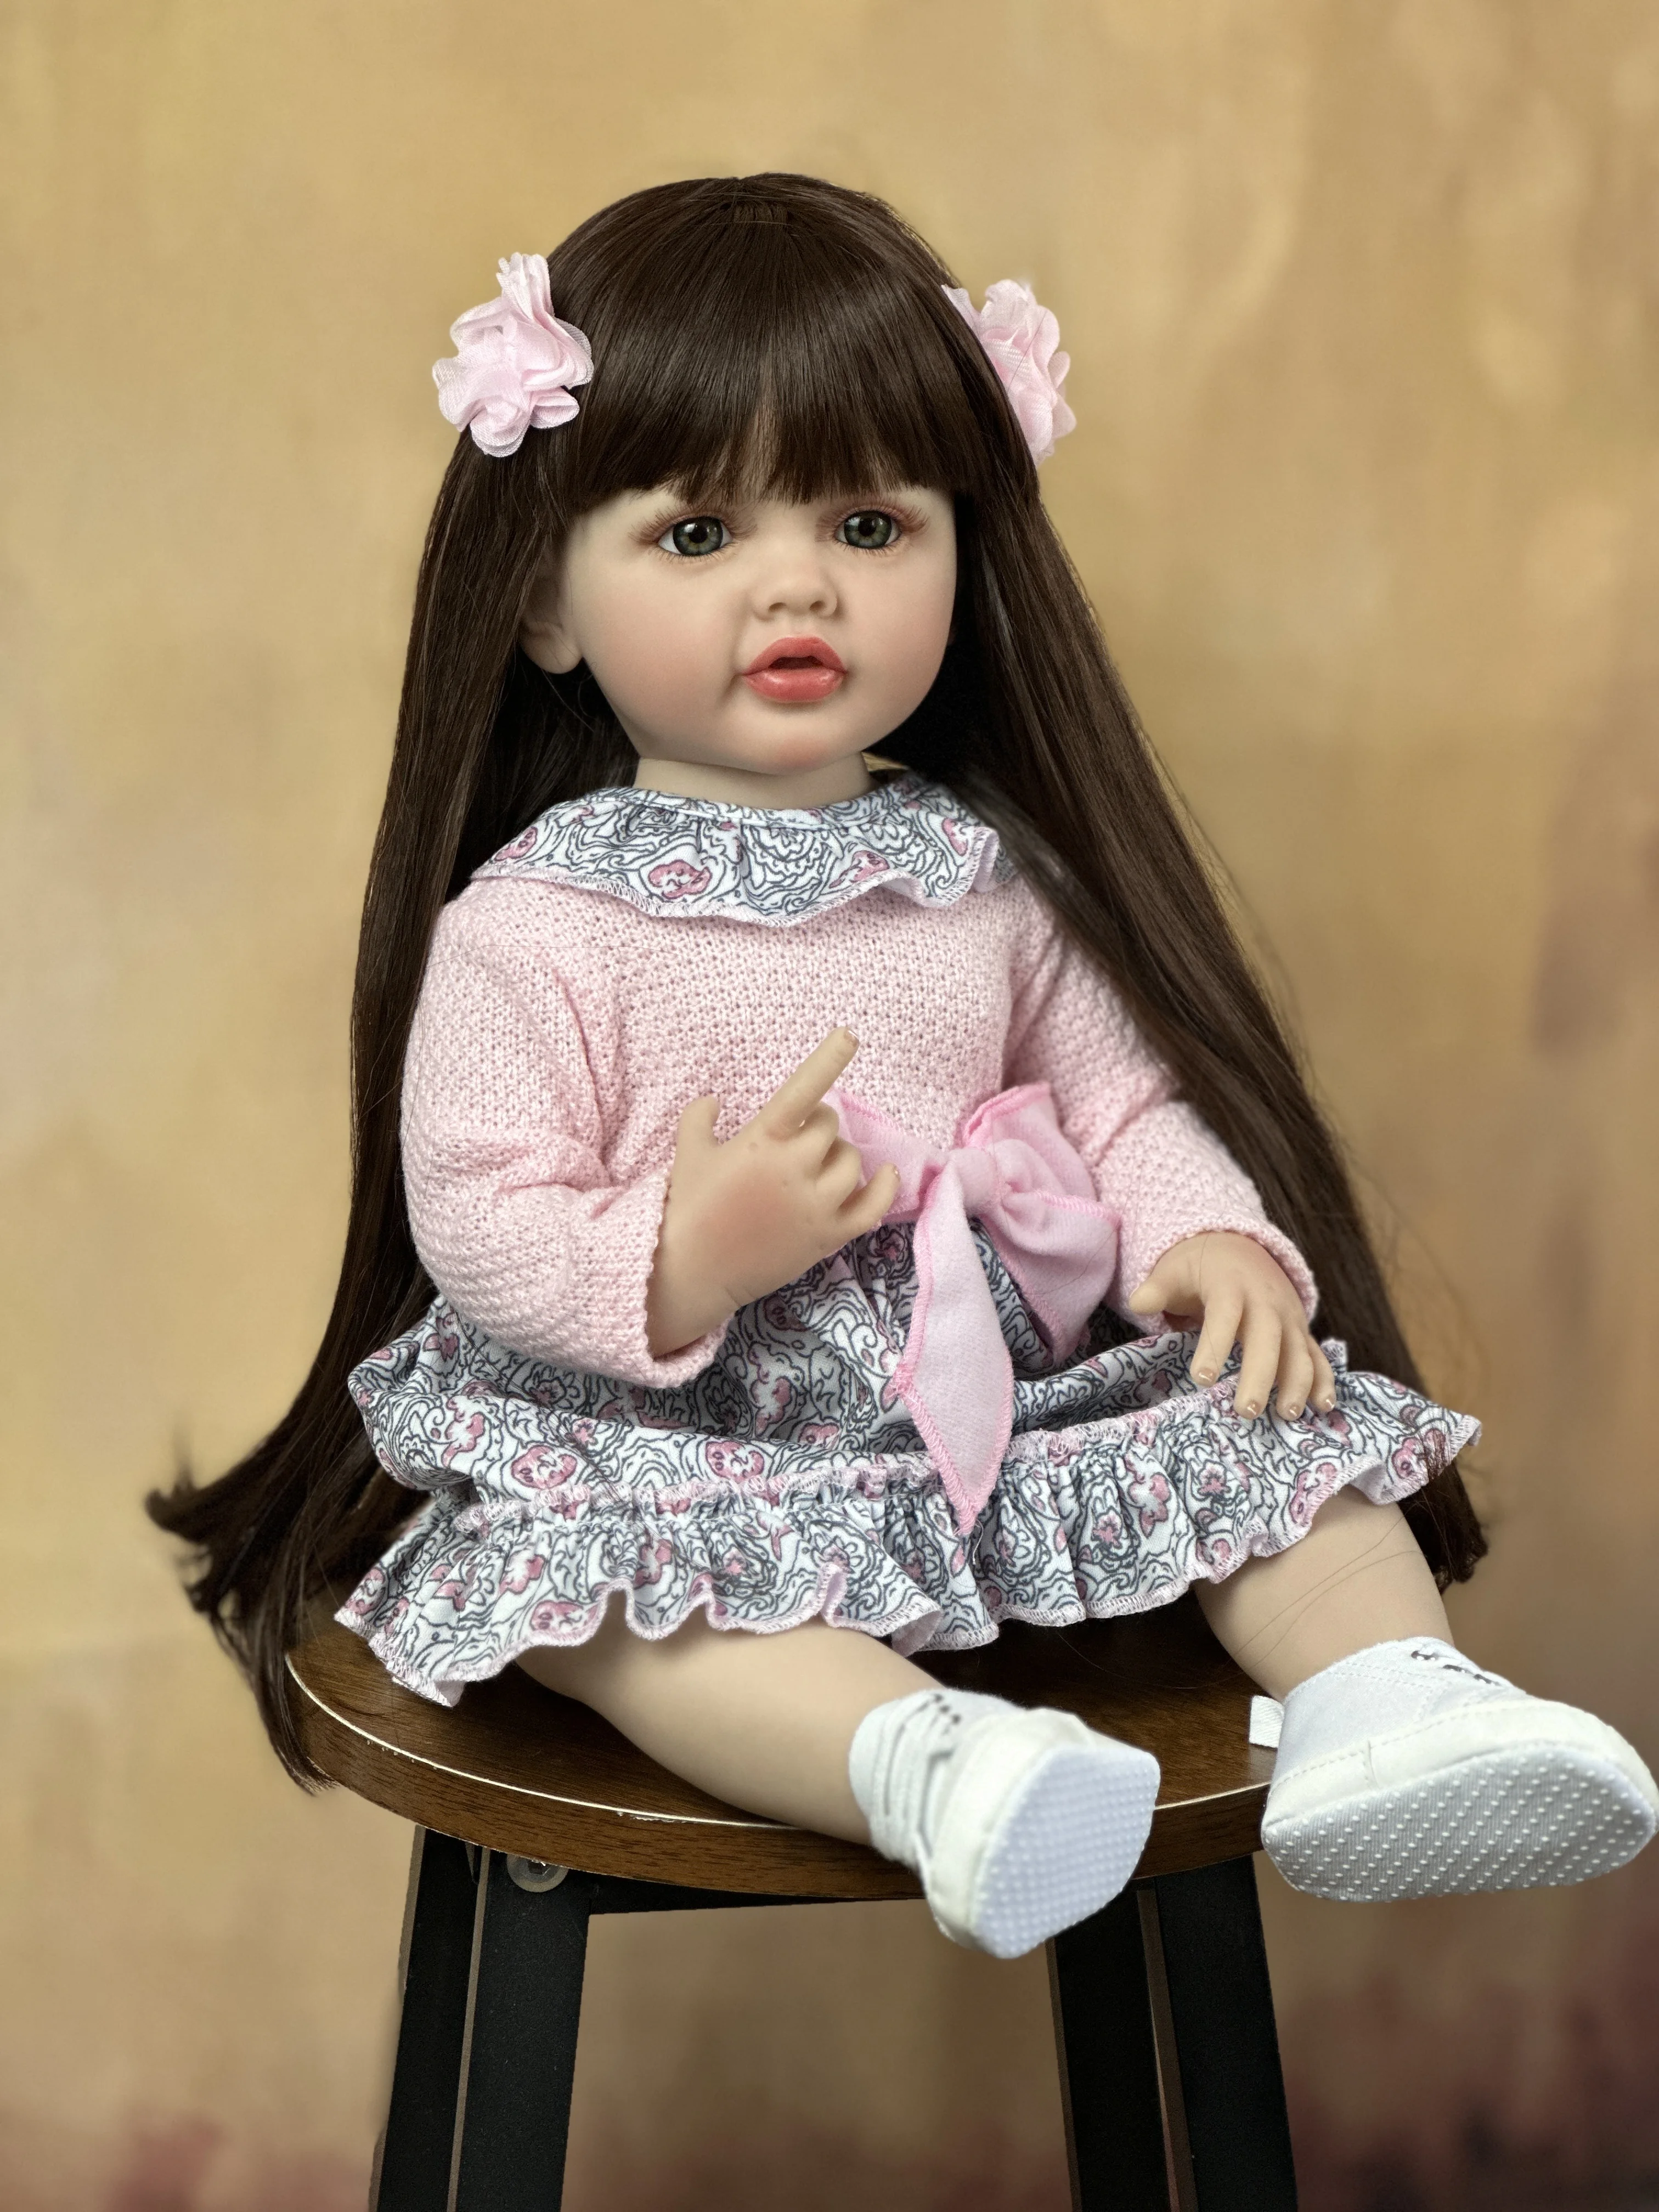 

Кукла реборн Мягкая силиконовая, кукла длиной 55 см, с реалистичными длинными волосами, подарок на день рождения, 22 дюйма